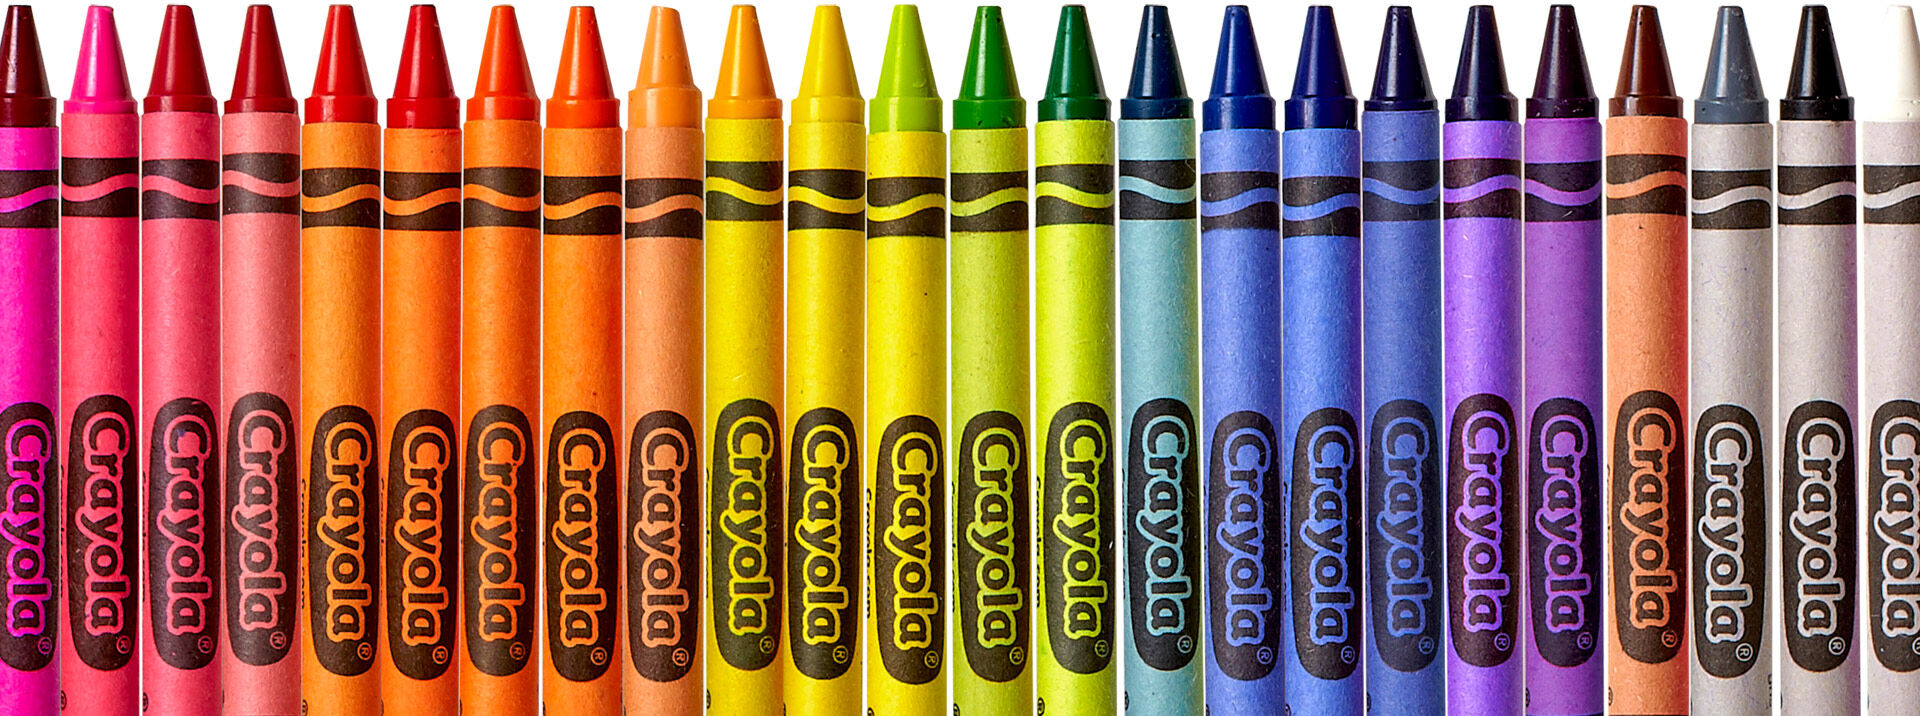 Download Crayola Crayons - Shop Crayon Packs & Boxes | Crayola | Crayola